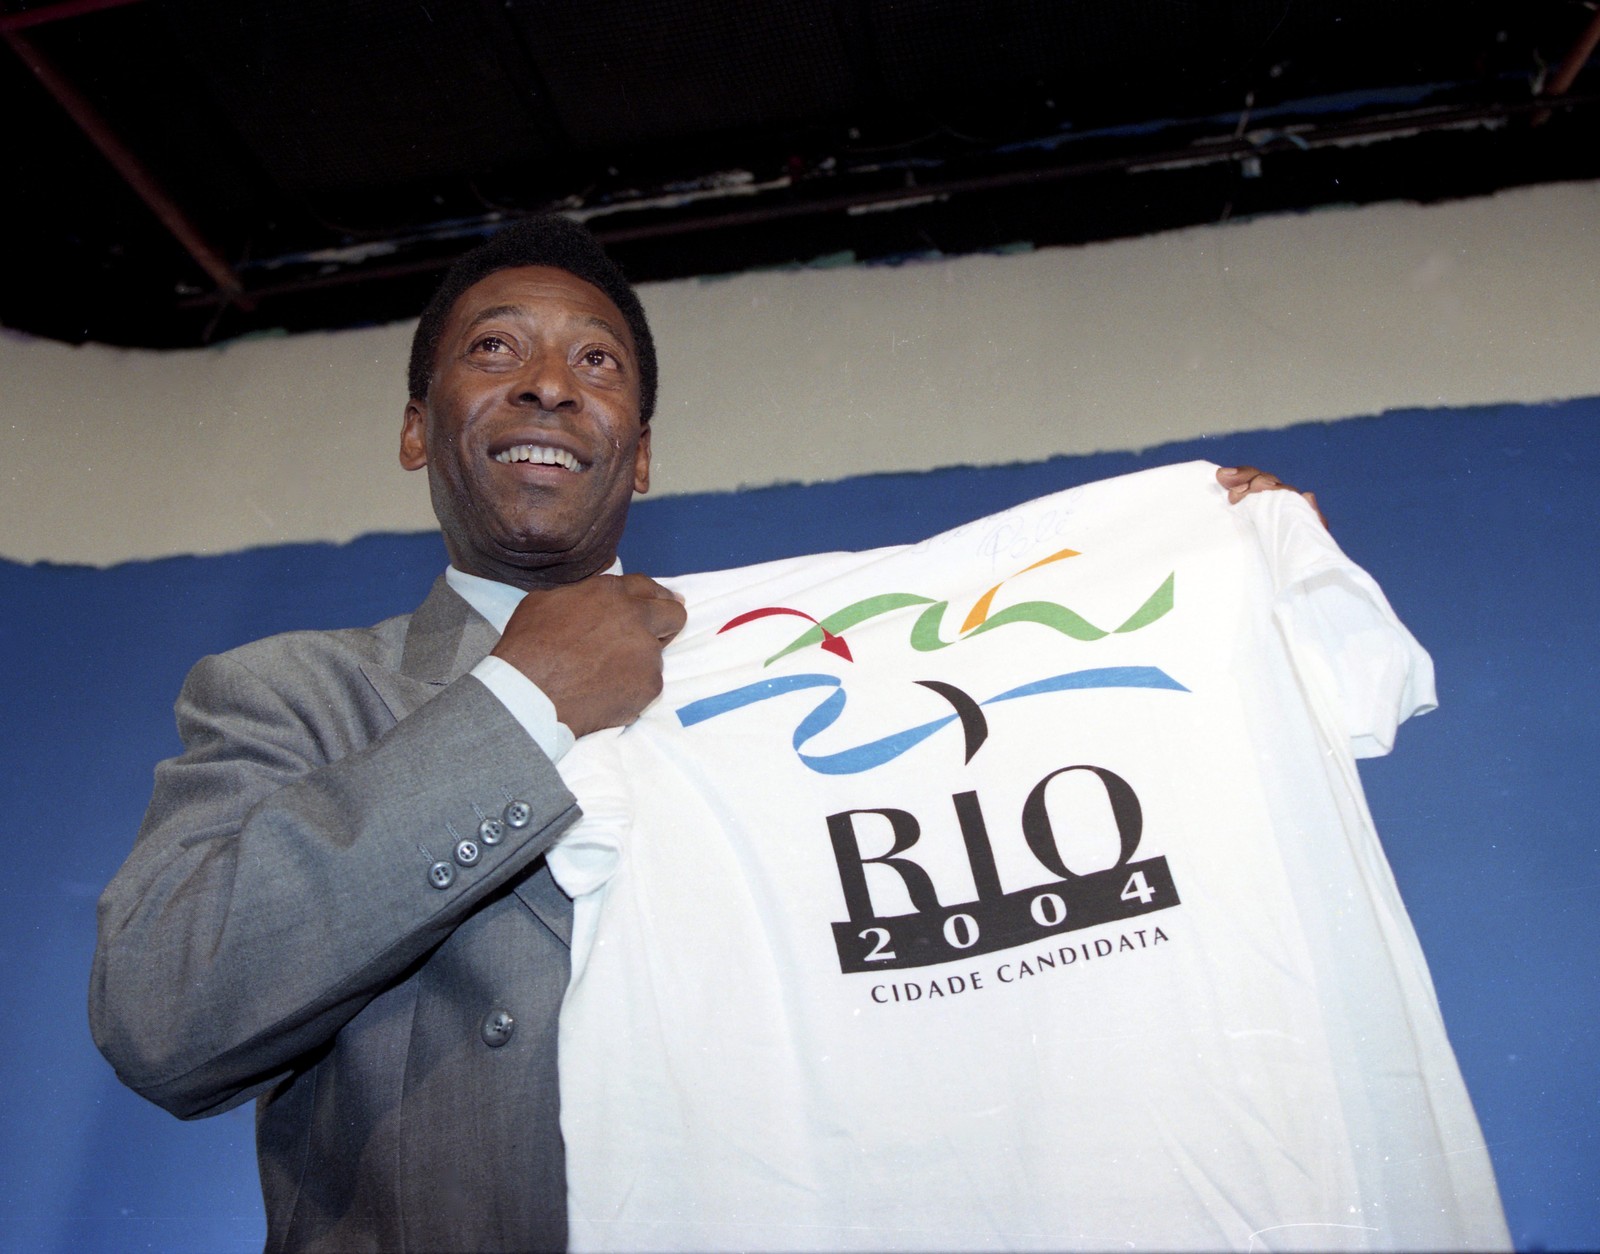 Pelé grava participação em filme para promover a Rio 2004, quando o Rio se candidatou às OlimpíadasJulio César Guimarães / Agência O Globo - 04/11/1996